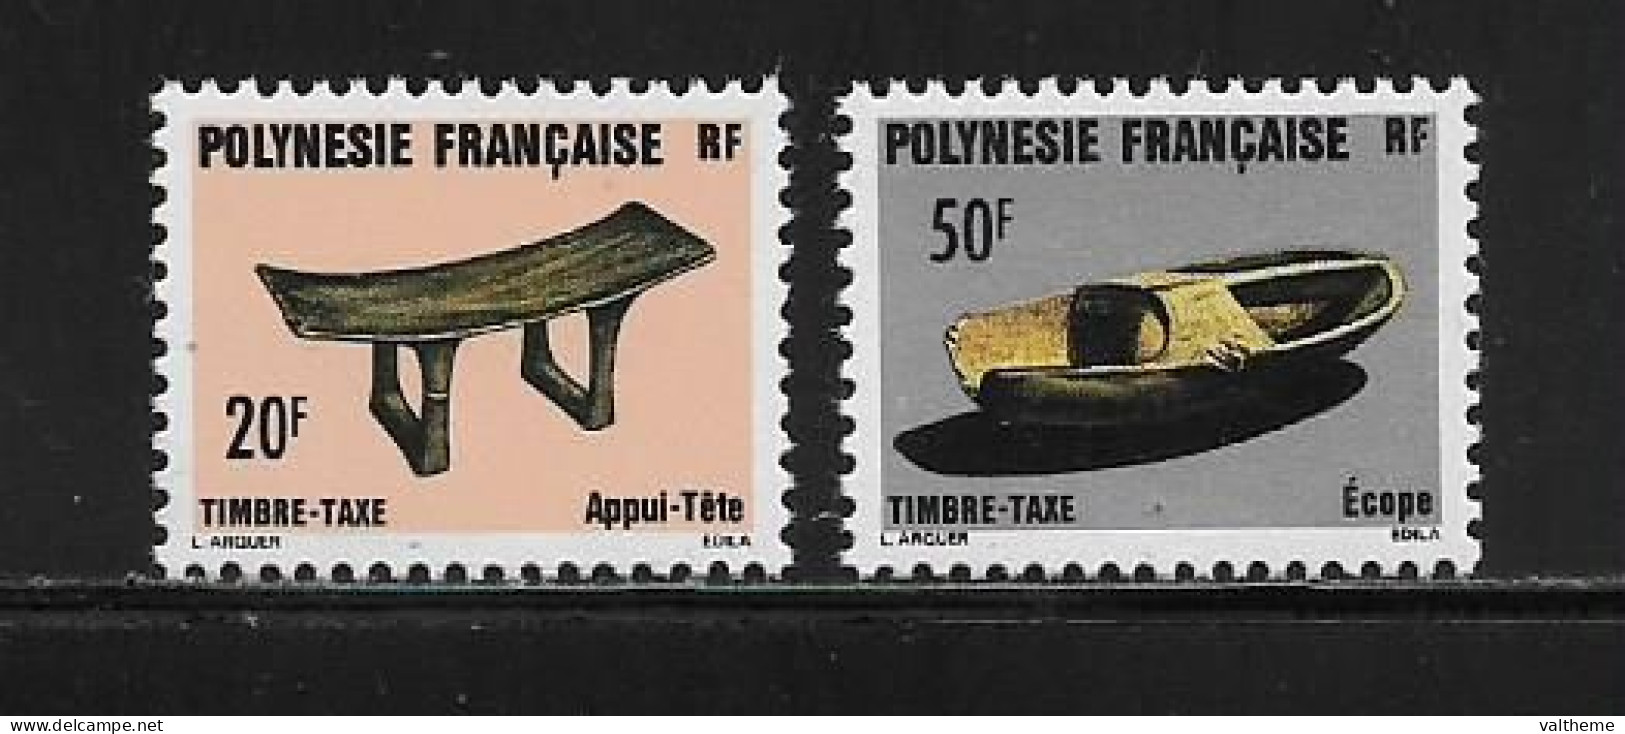 POLYNESIE FRANCAISE  ( OCPOL  -1109 )   1987   N° YVERT ET TELLIER  N° 8/9   N** - Impuestos